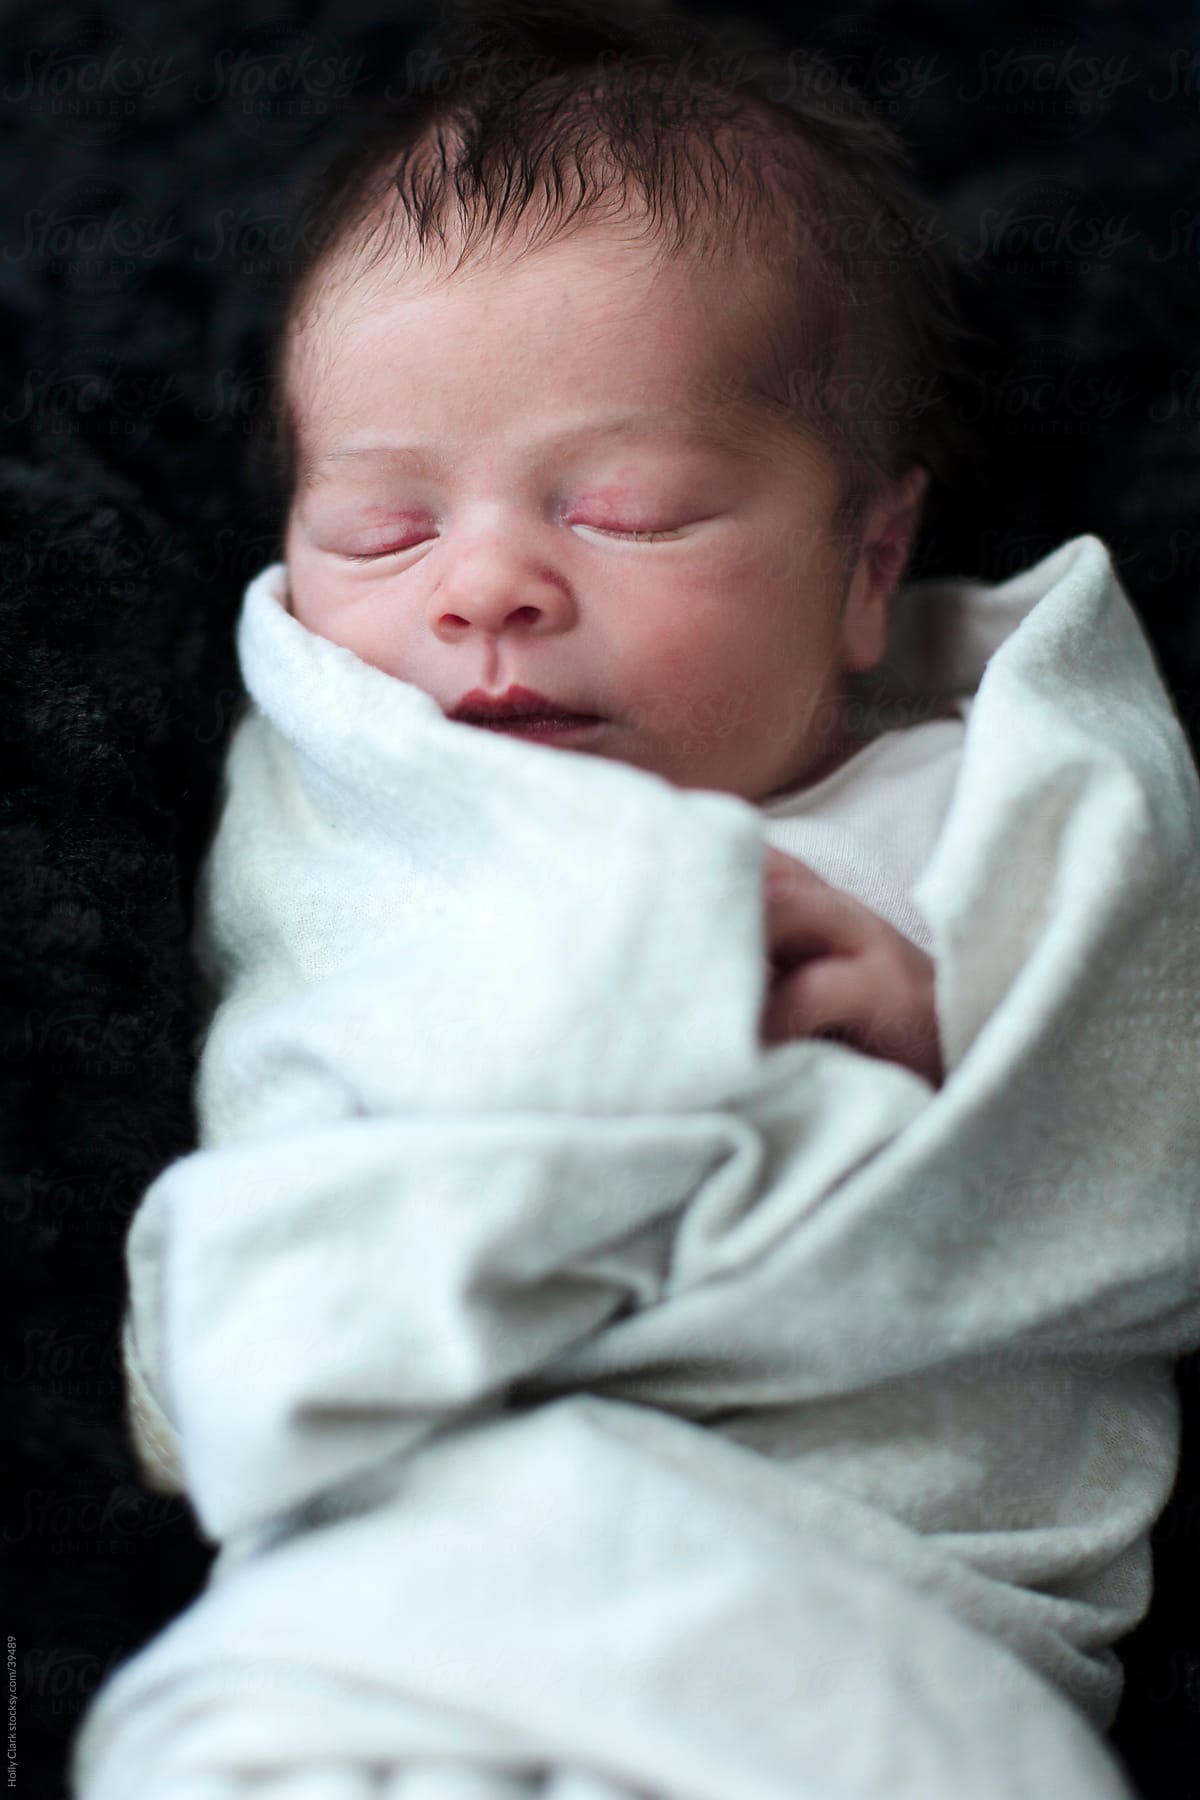 Swaddled Newborn Sleeping on Black Background